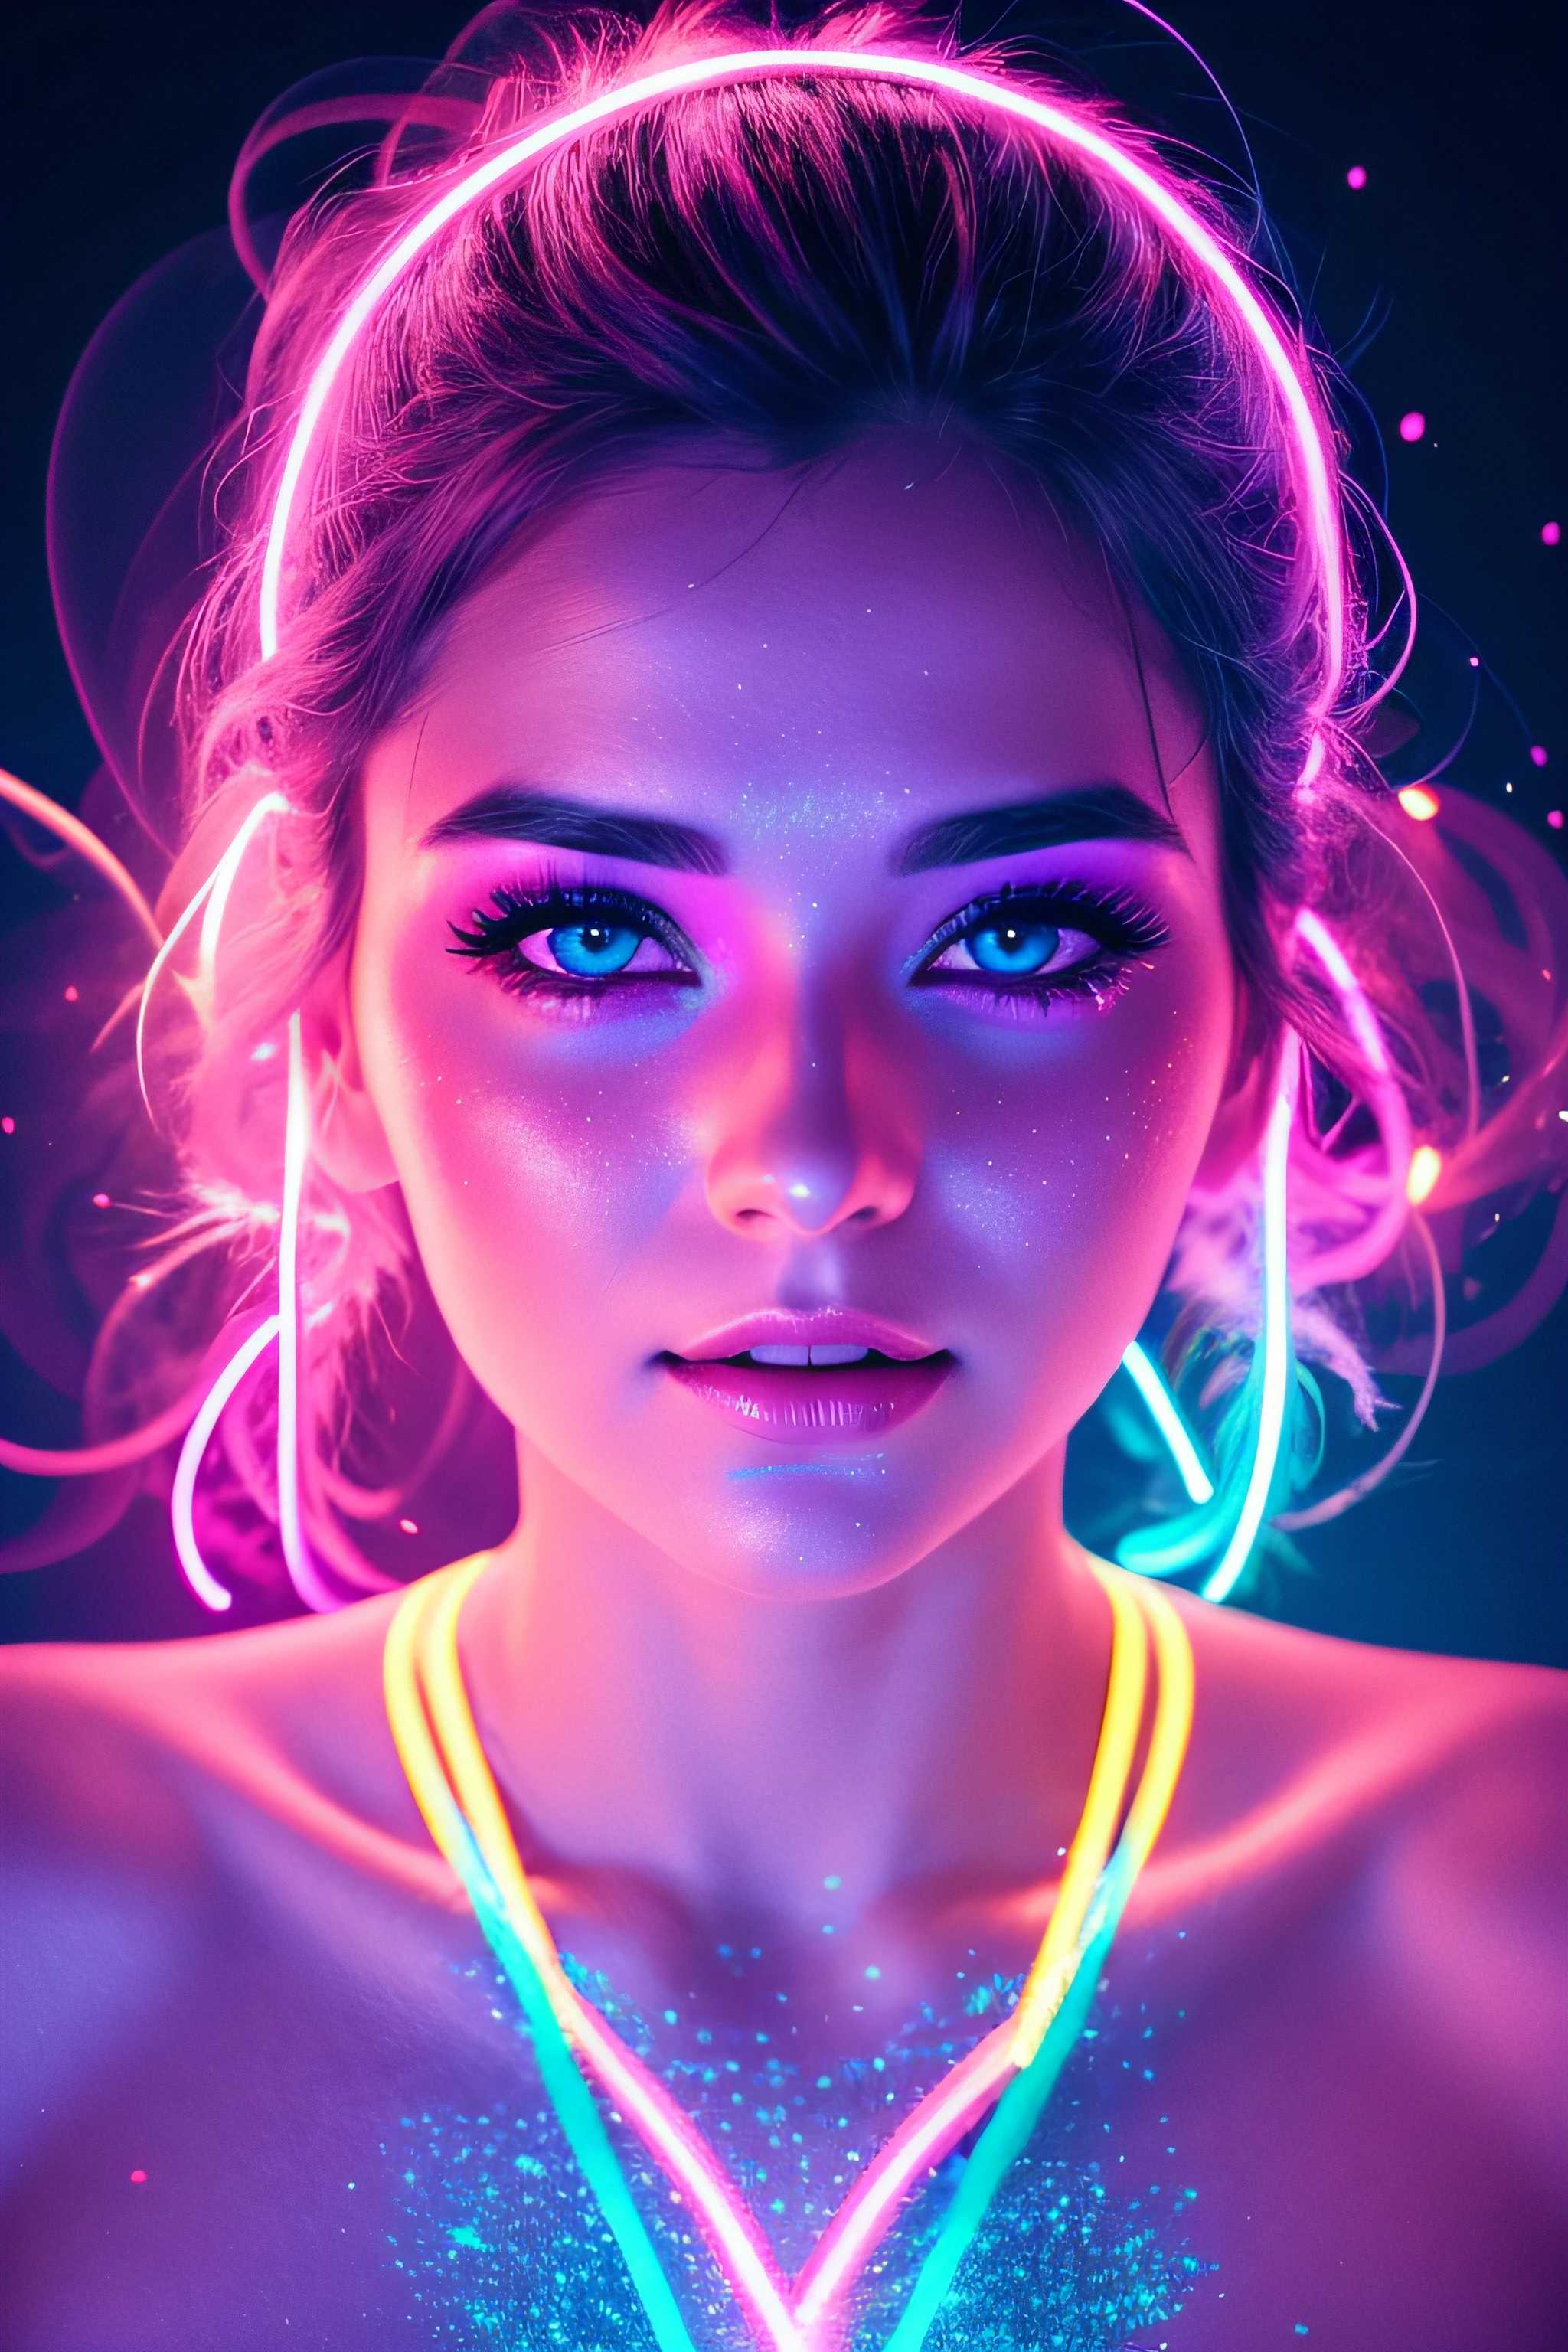 وجه امرأة جميلة تبلغ من العمر 30 عامًا مضاء بأضواء ملونة وخلفية واقعية وألوان زاهية وخلفية غبار لامعة باللون الوردي النيون والأزرق النيون مع بخار الدخان الوردي والأزرق